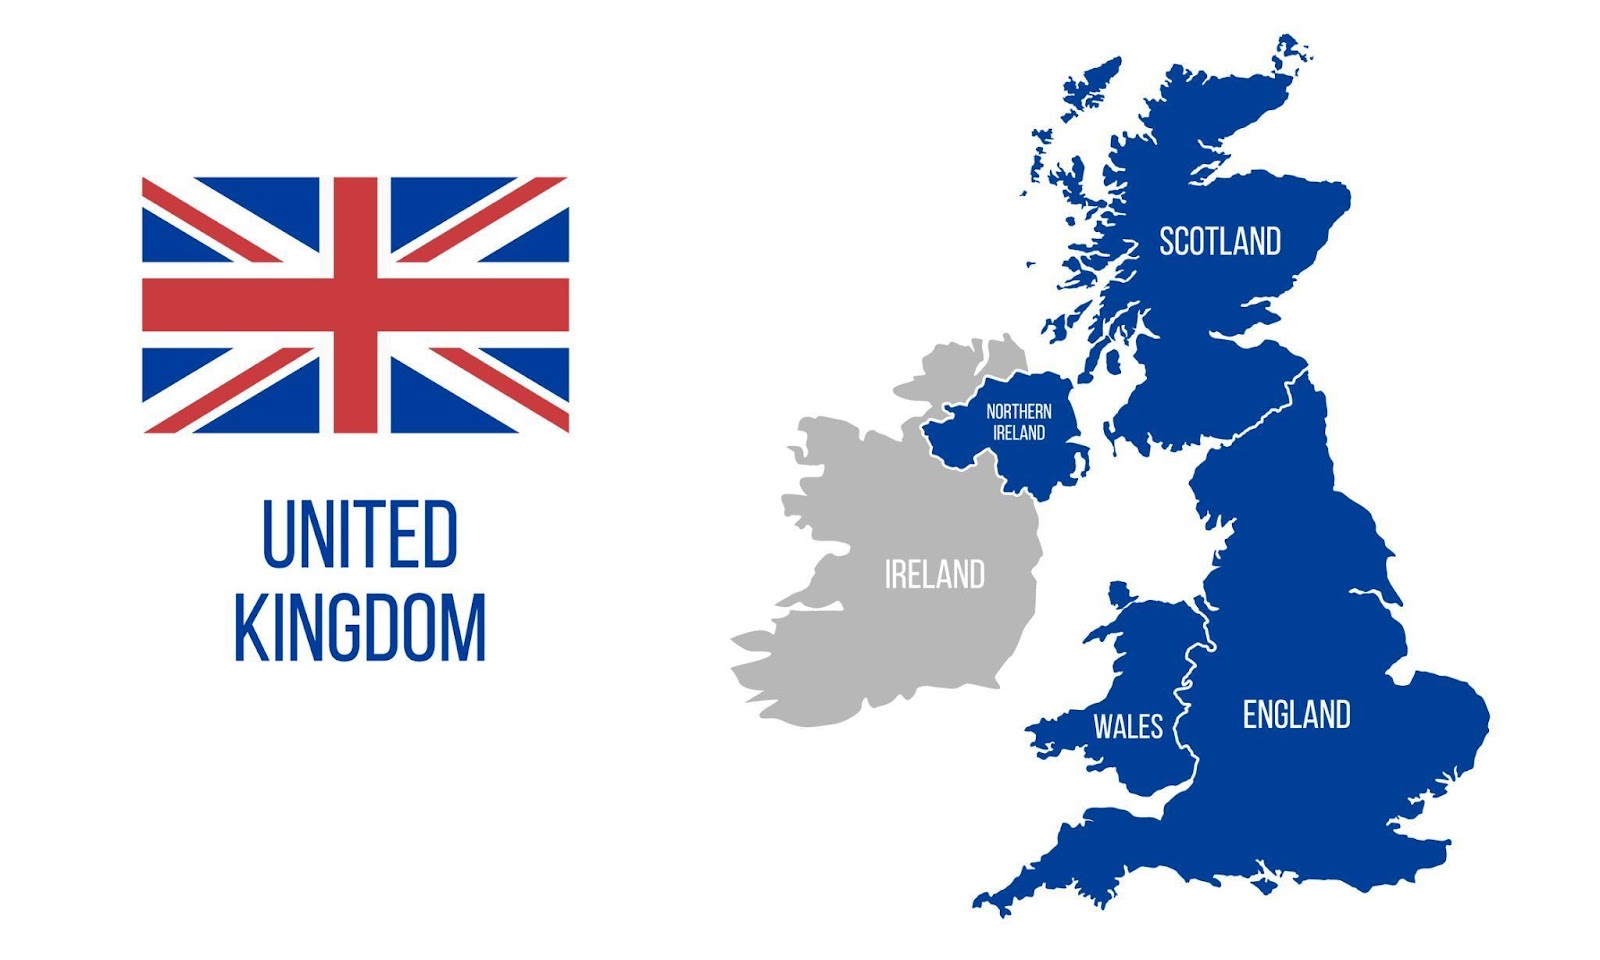 Beachten Sie, dass das Vereinigte Königreich (UK) und Großbritannien, obwohl sehr ähnlich, in diesem rechtlichen Kontext nicht synonym sind